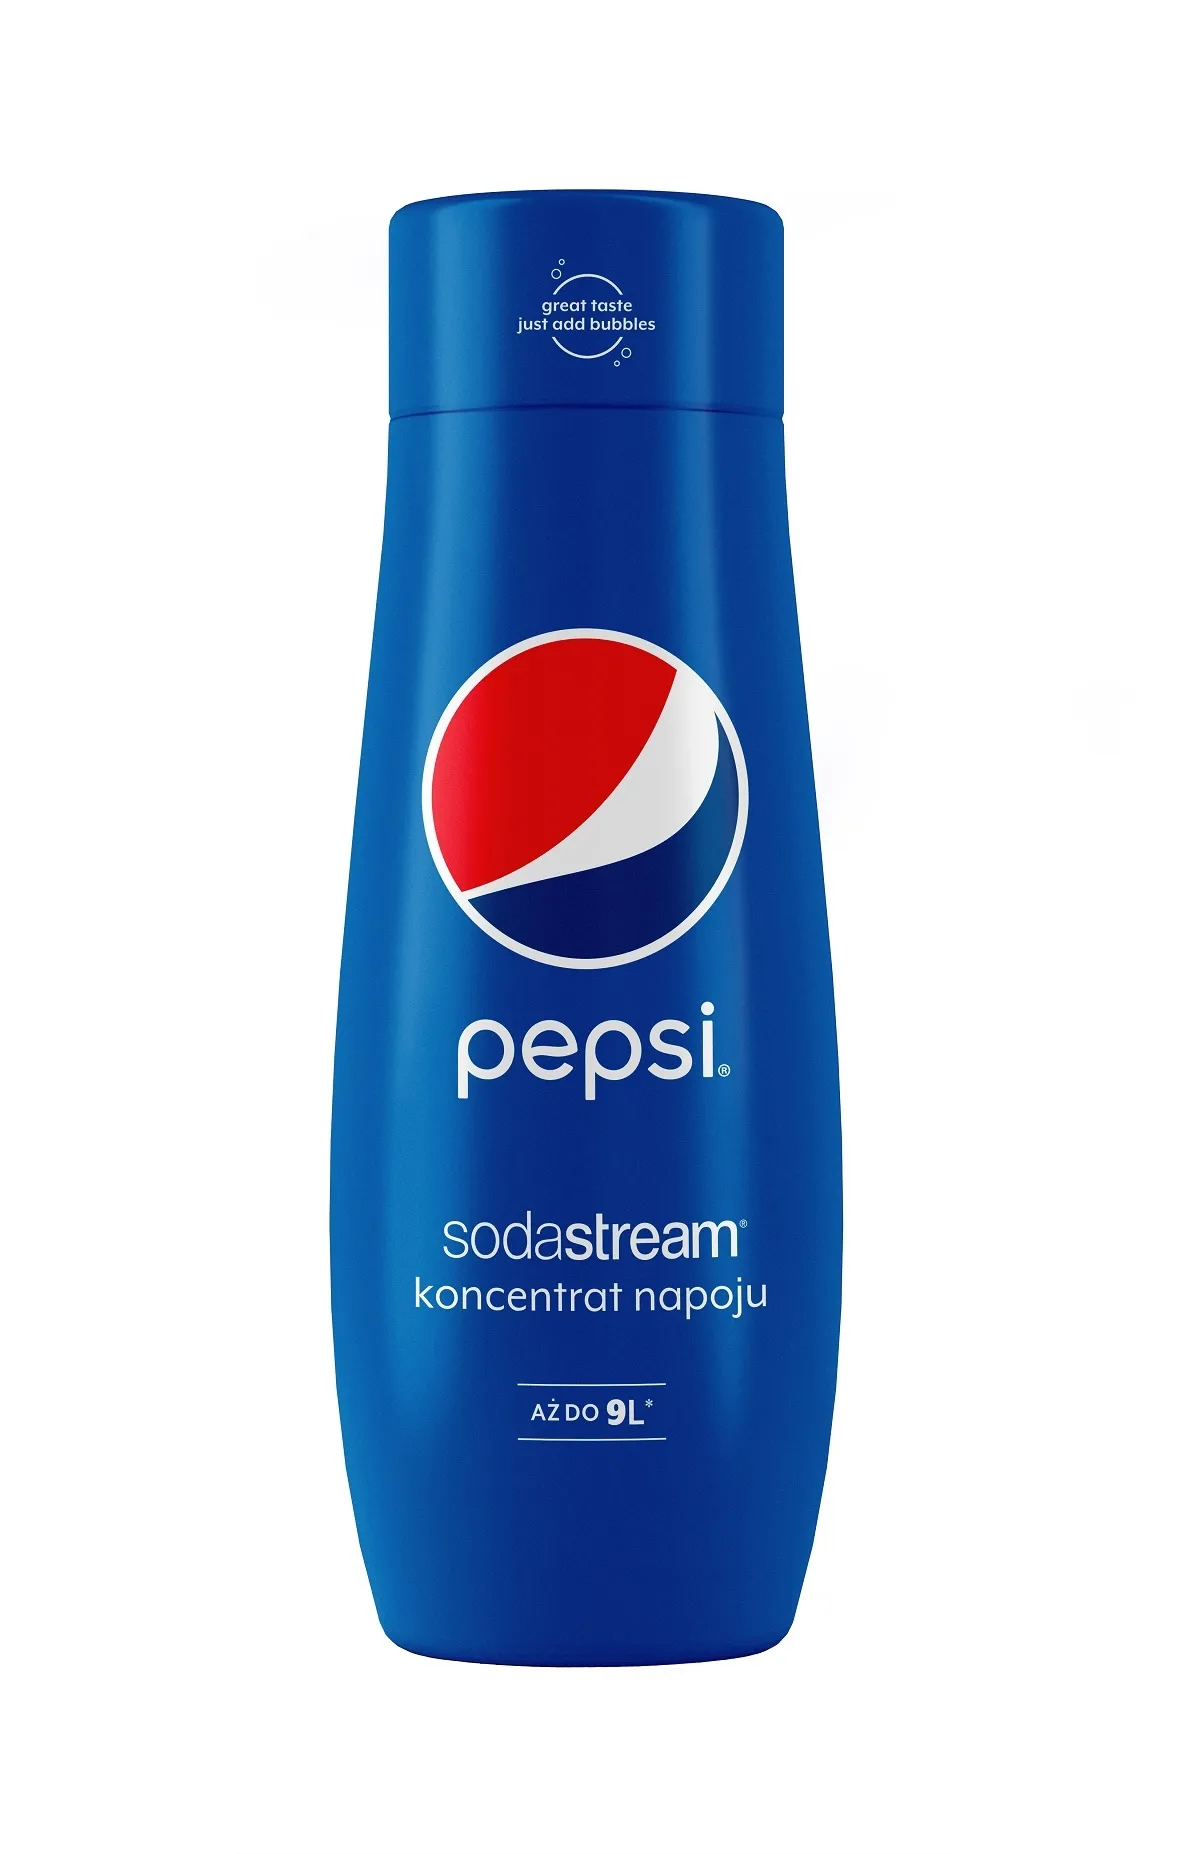 Zdjęcia - Pozostałe urządzenia kuchenne SodaStream Syrop Pepsi 440 ml 